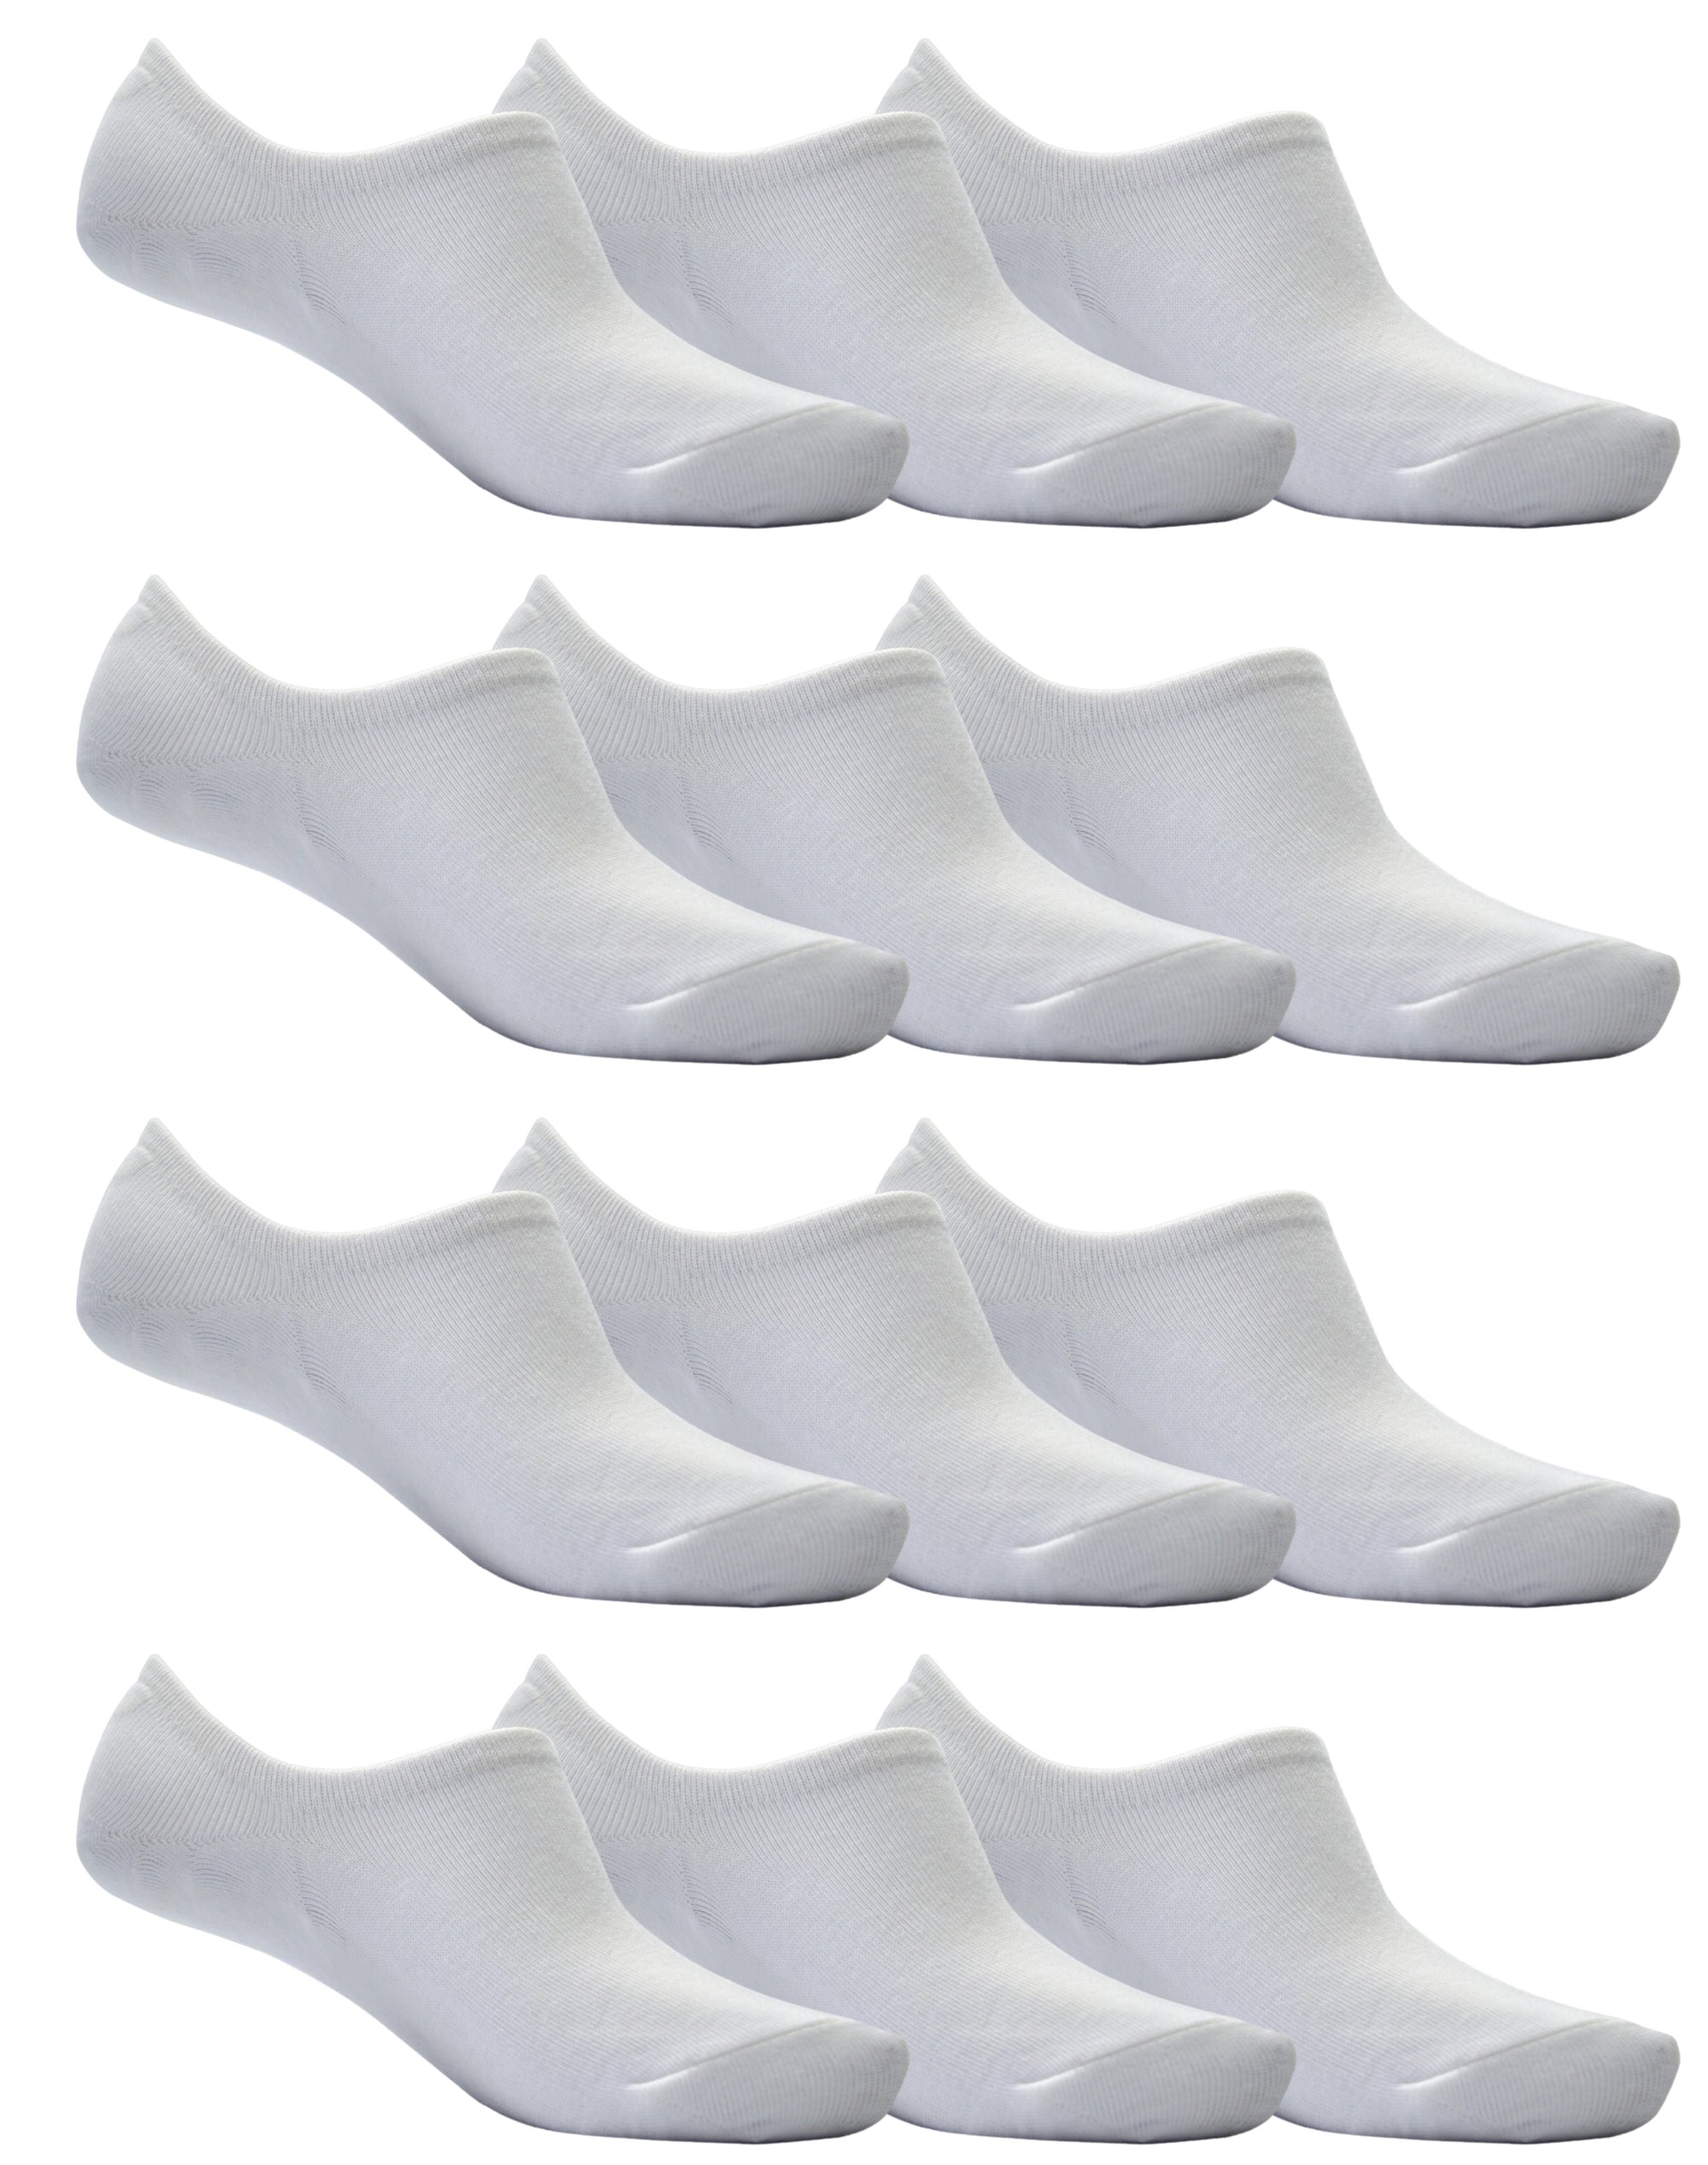 OCTAVE Unisex Plain Invisible Trainer Liner Socks - 12 Pack White